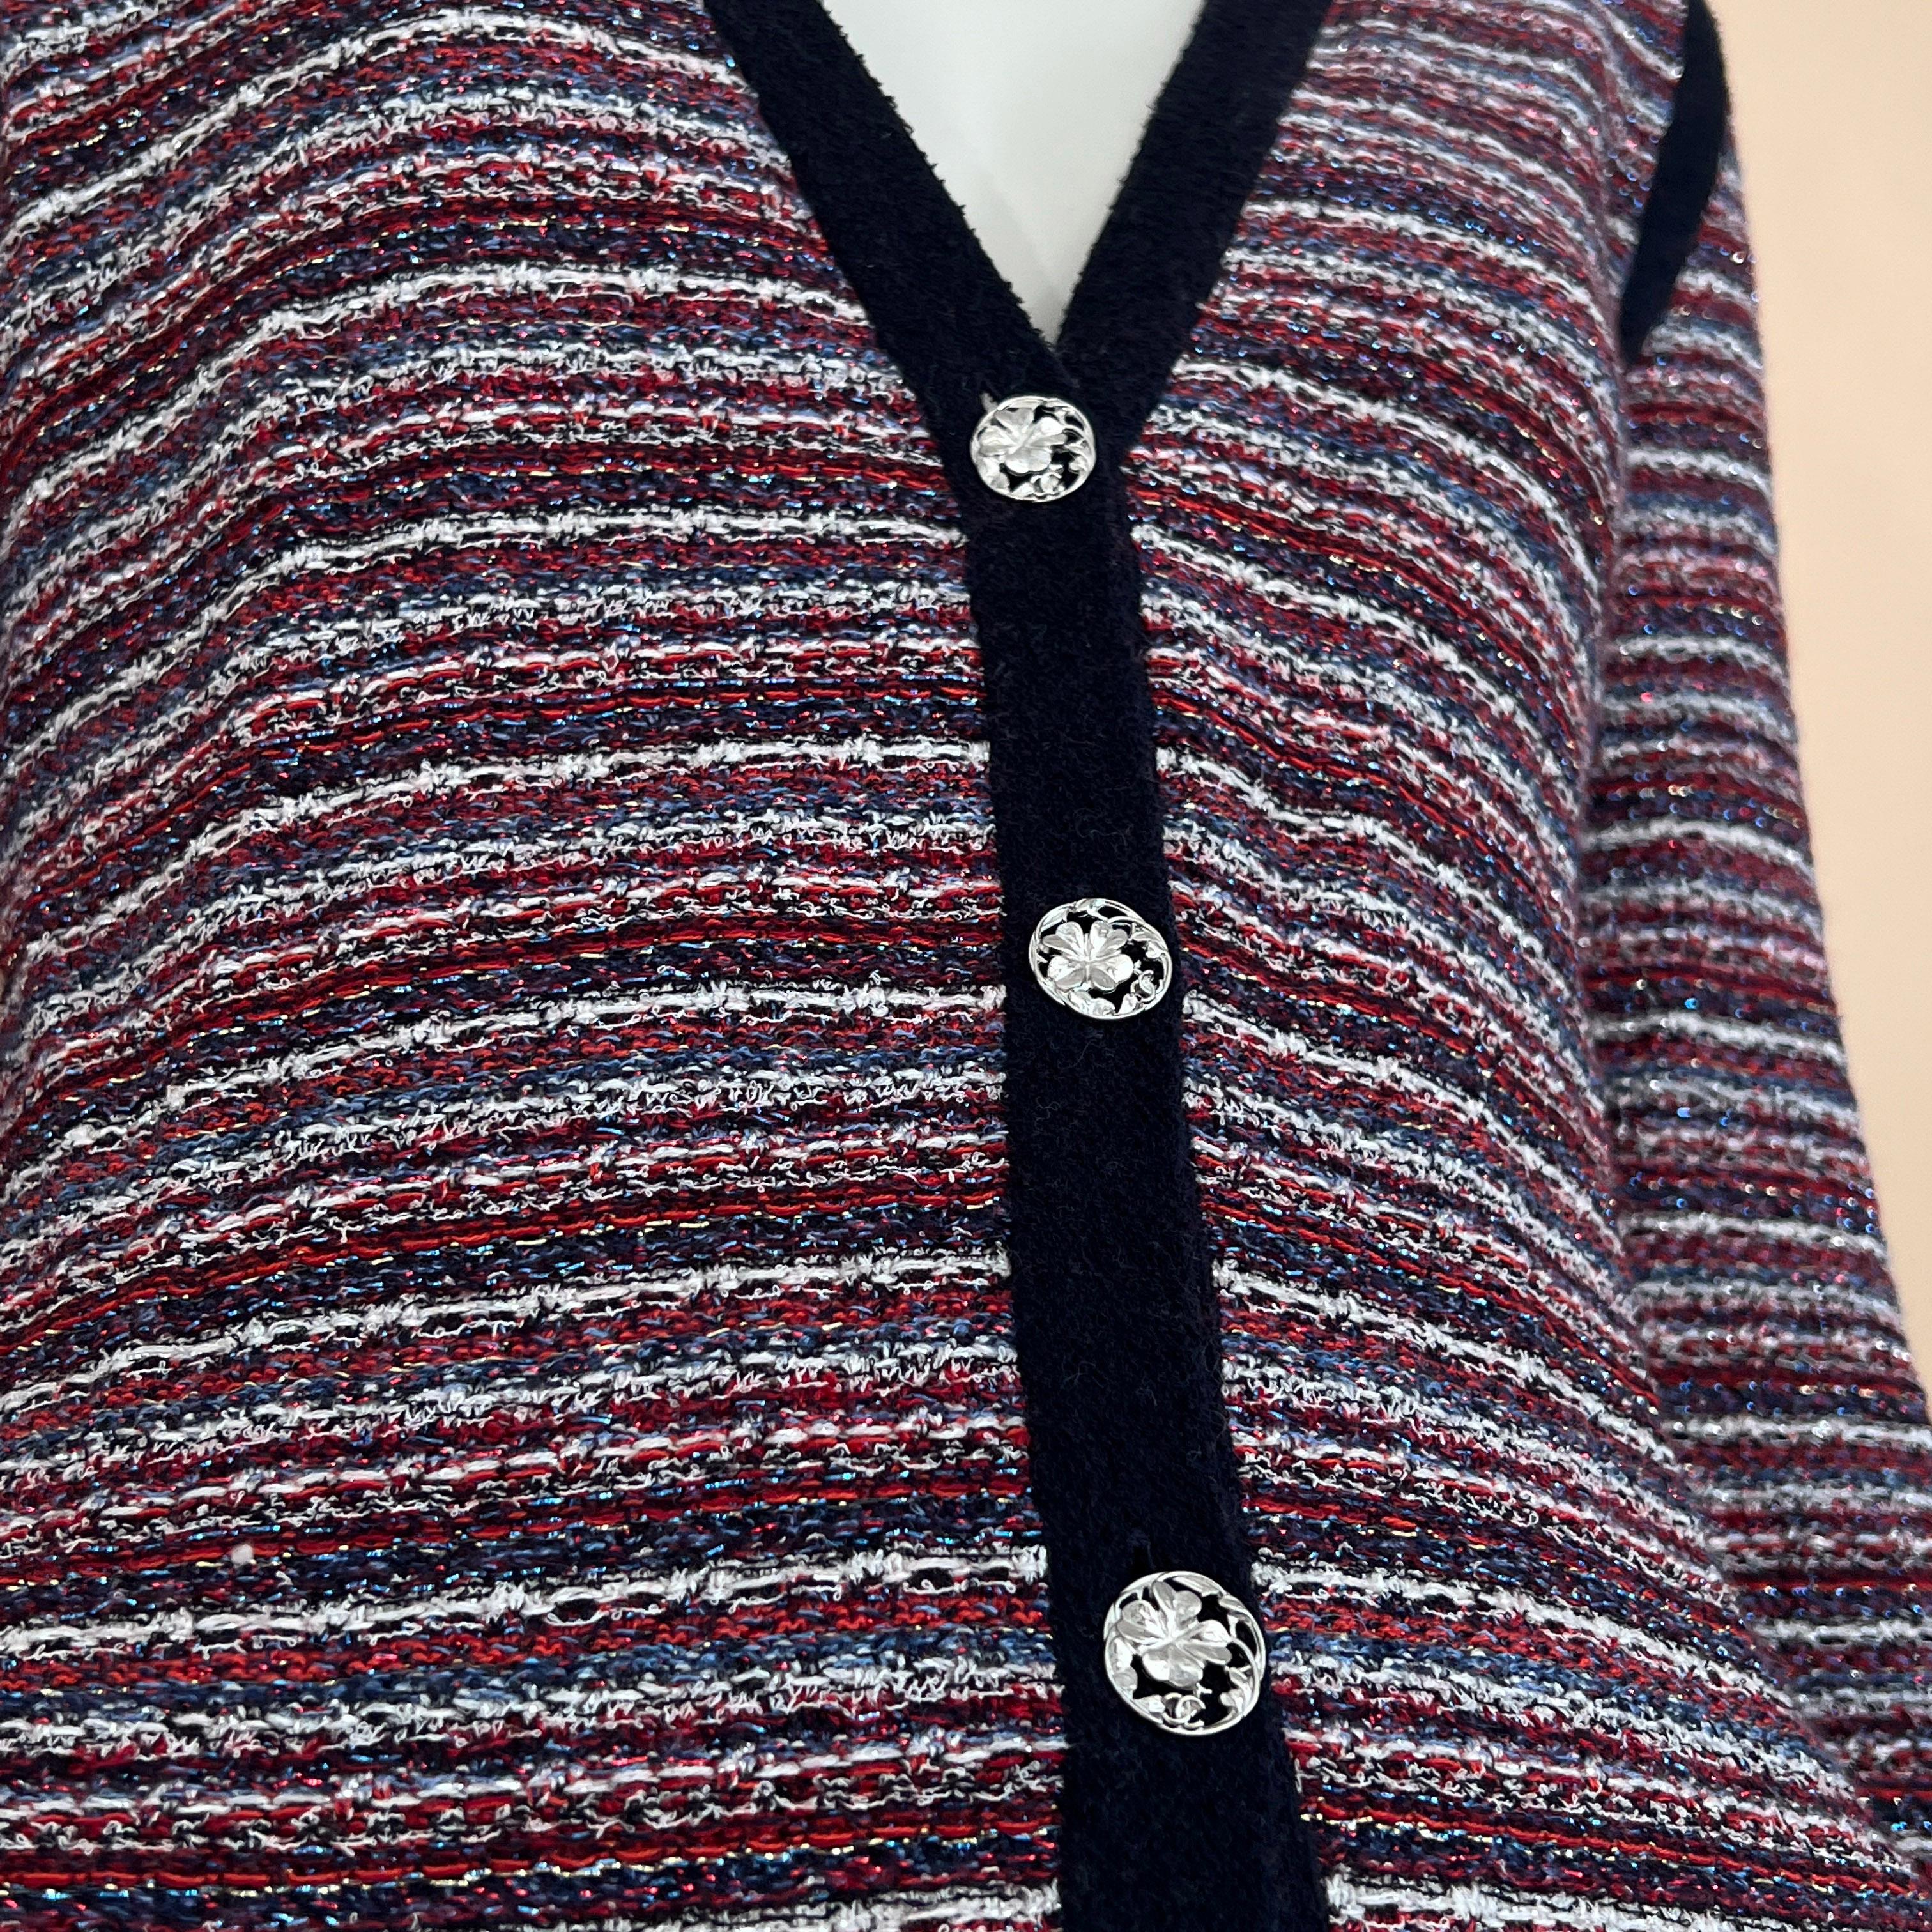 Cardigan en tweed tissé de collection Chanel avec de charmants boutons en forme de trèfle portant le logo CC. 
Taille 36 FR. L'état est impeccable, comme s'il s'agissait d'un produit neuf.